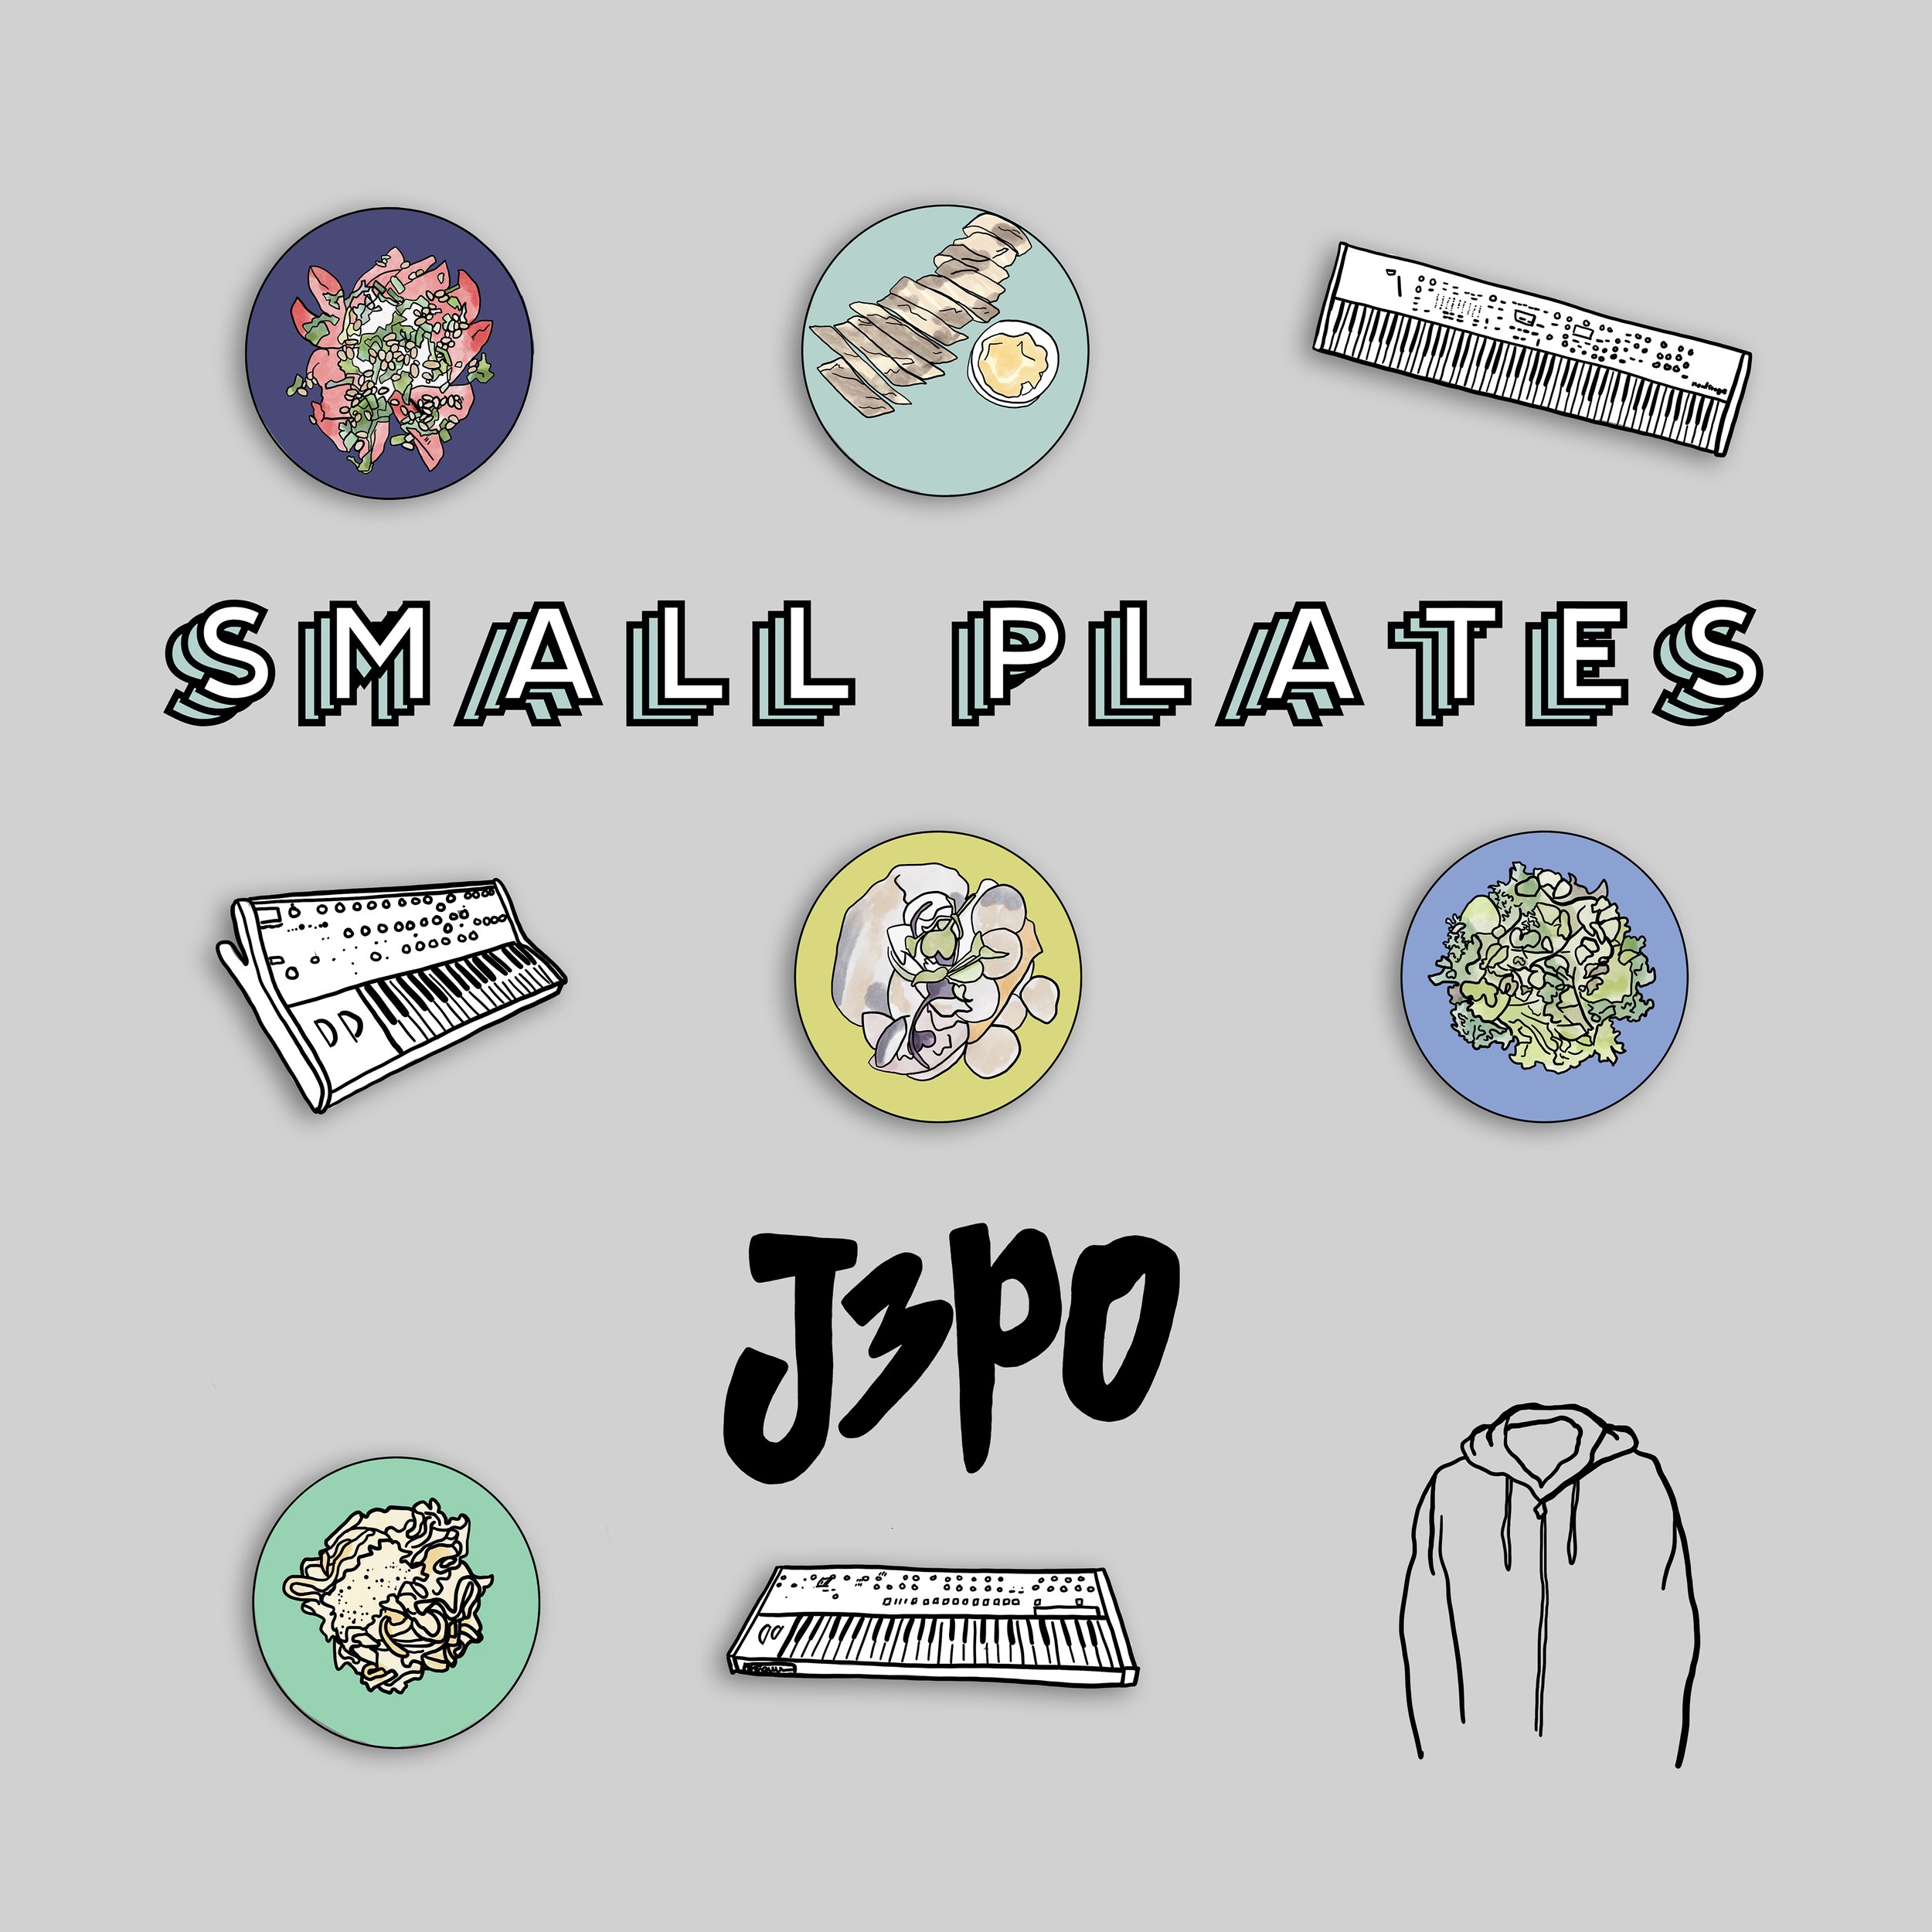 J3PO_Small Plates ALBUM COVER - Spotify 3000px.jpg